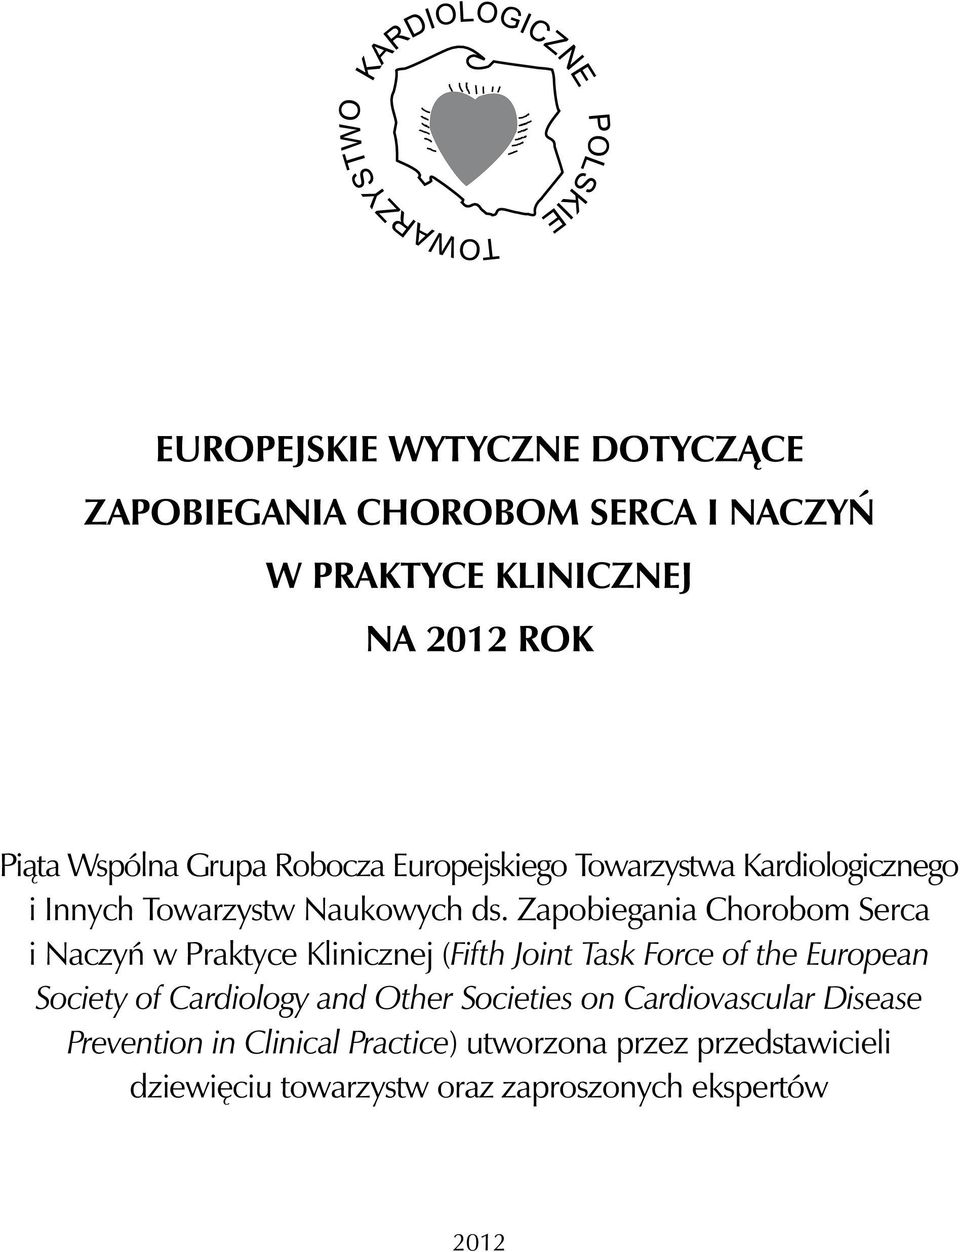 Zapobiegania Chorobom Serca i Naczyń w Praktyce Klinicznej (Fifth Joint Task Force of the European Society of Cardiology